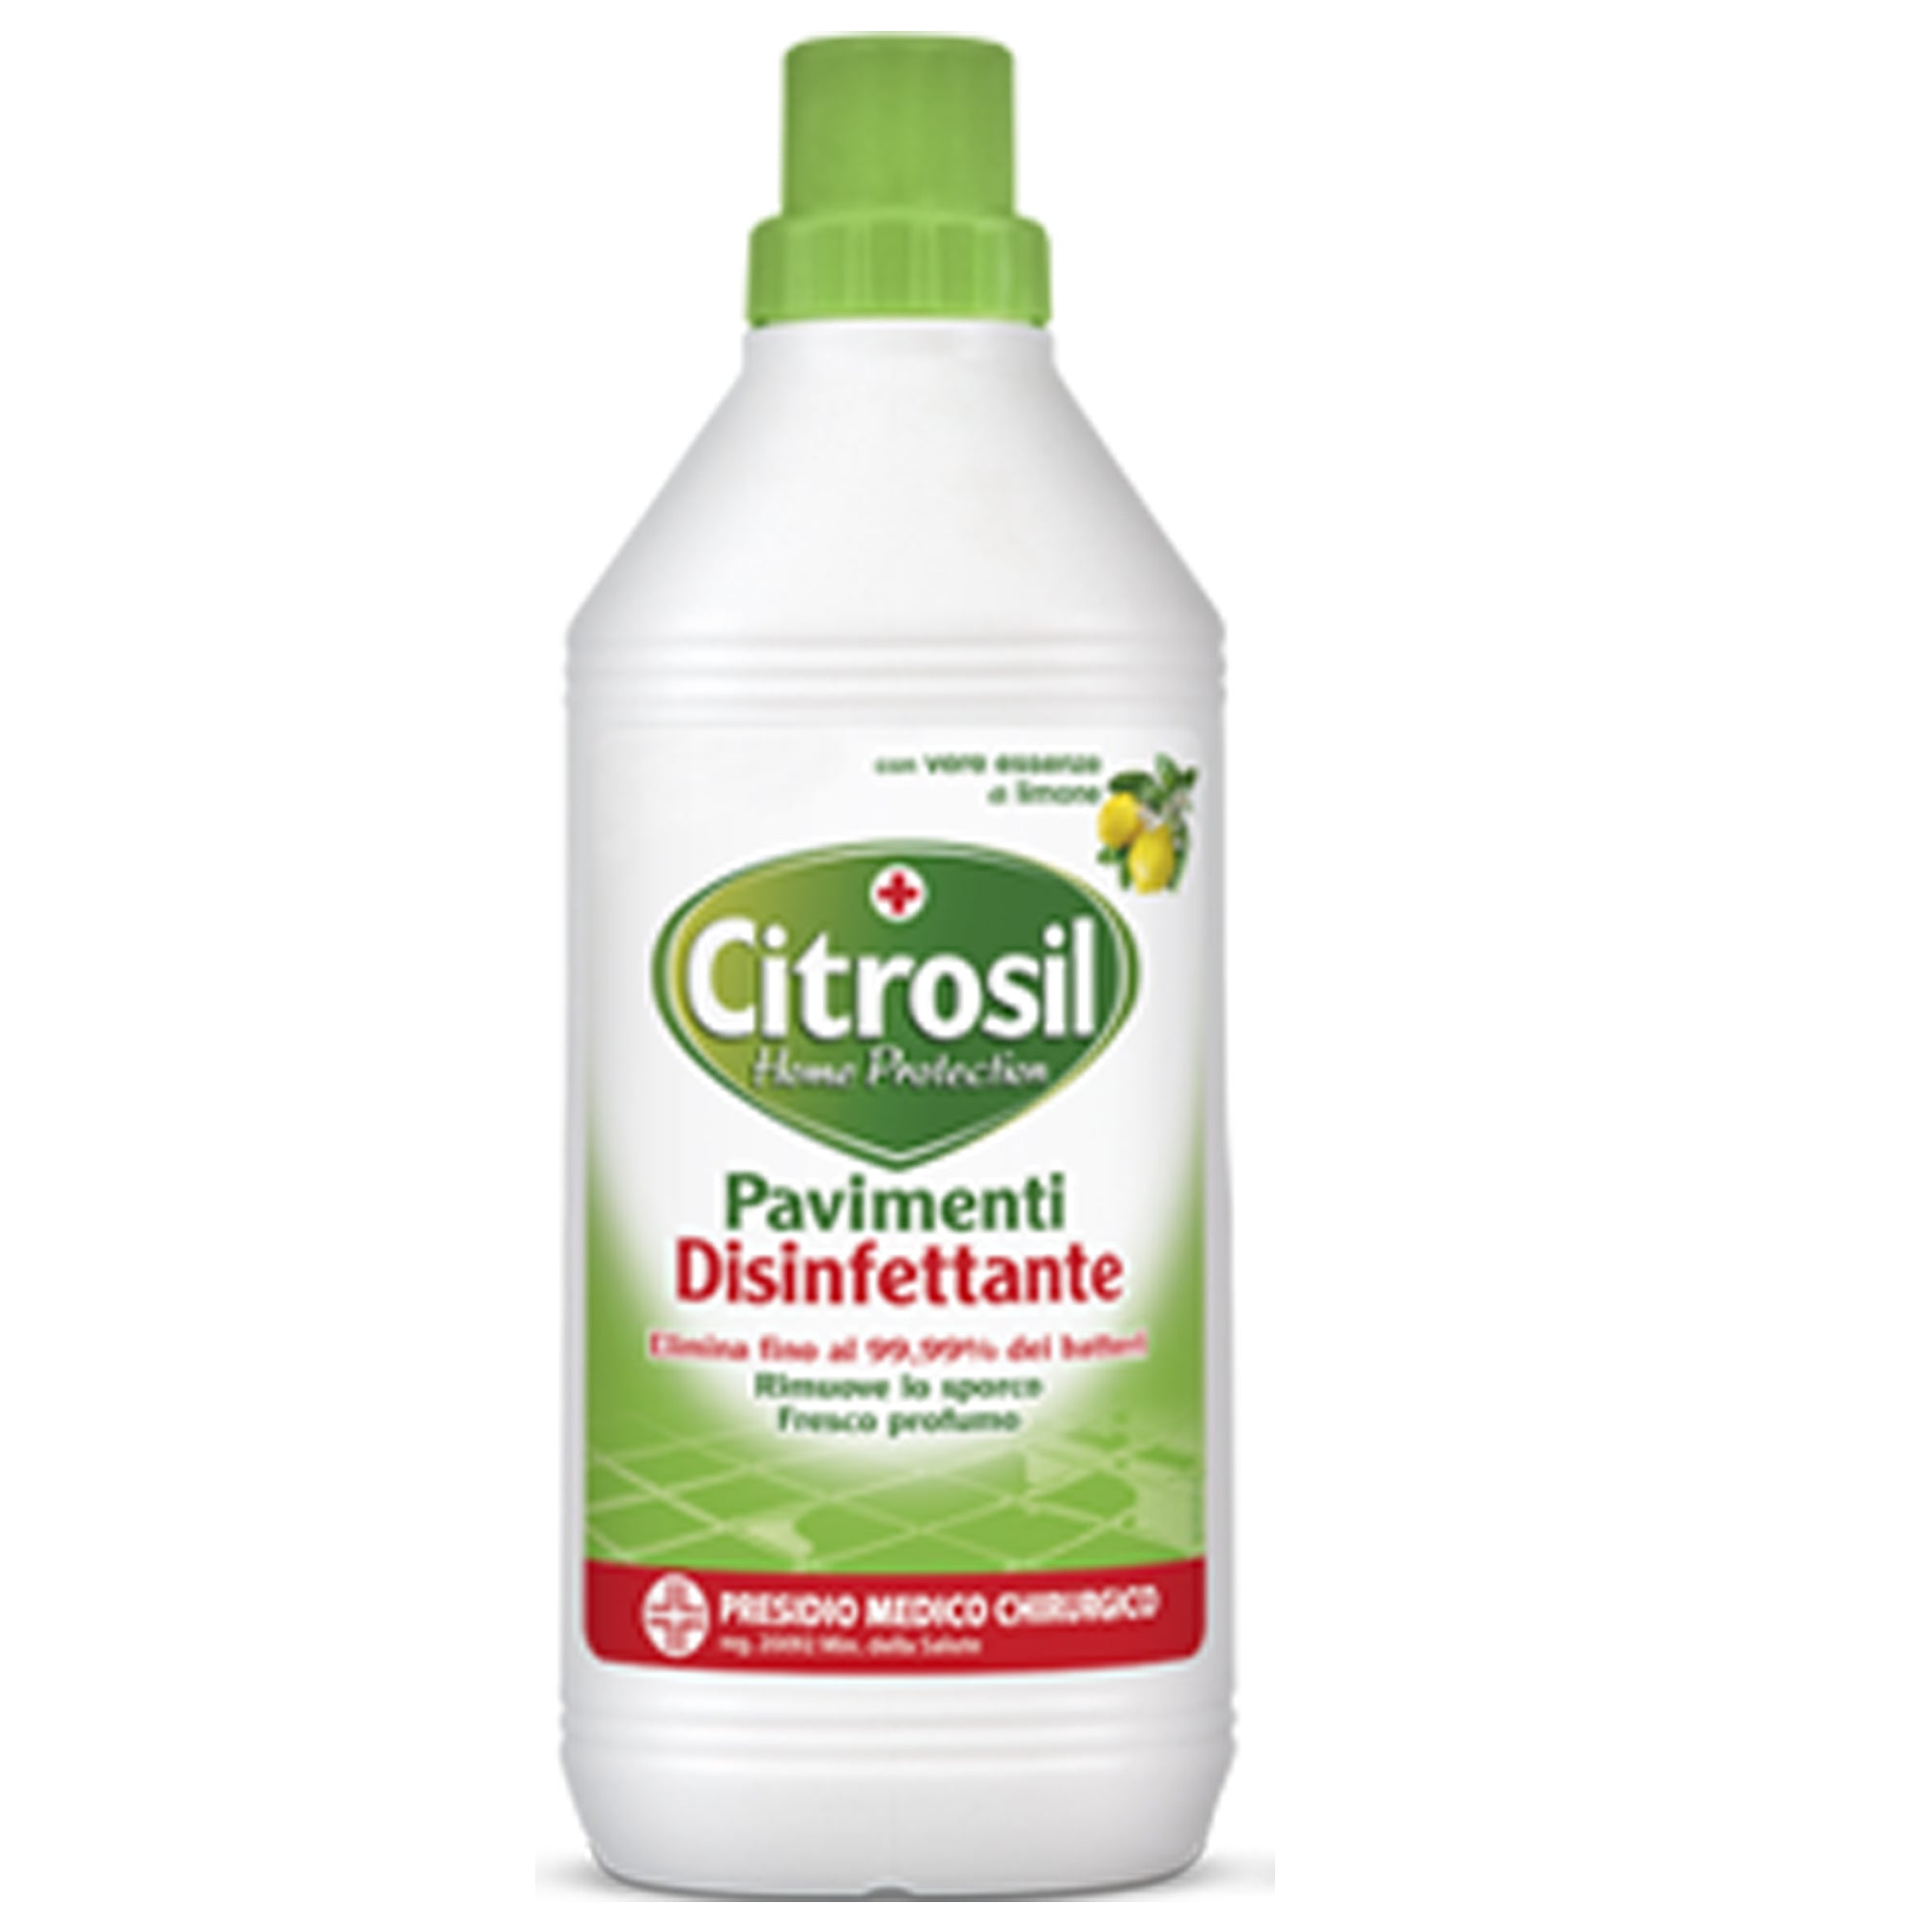 citrosil-pavimenti-disinfettante-900ml-limone